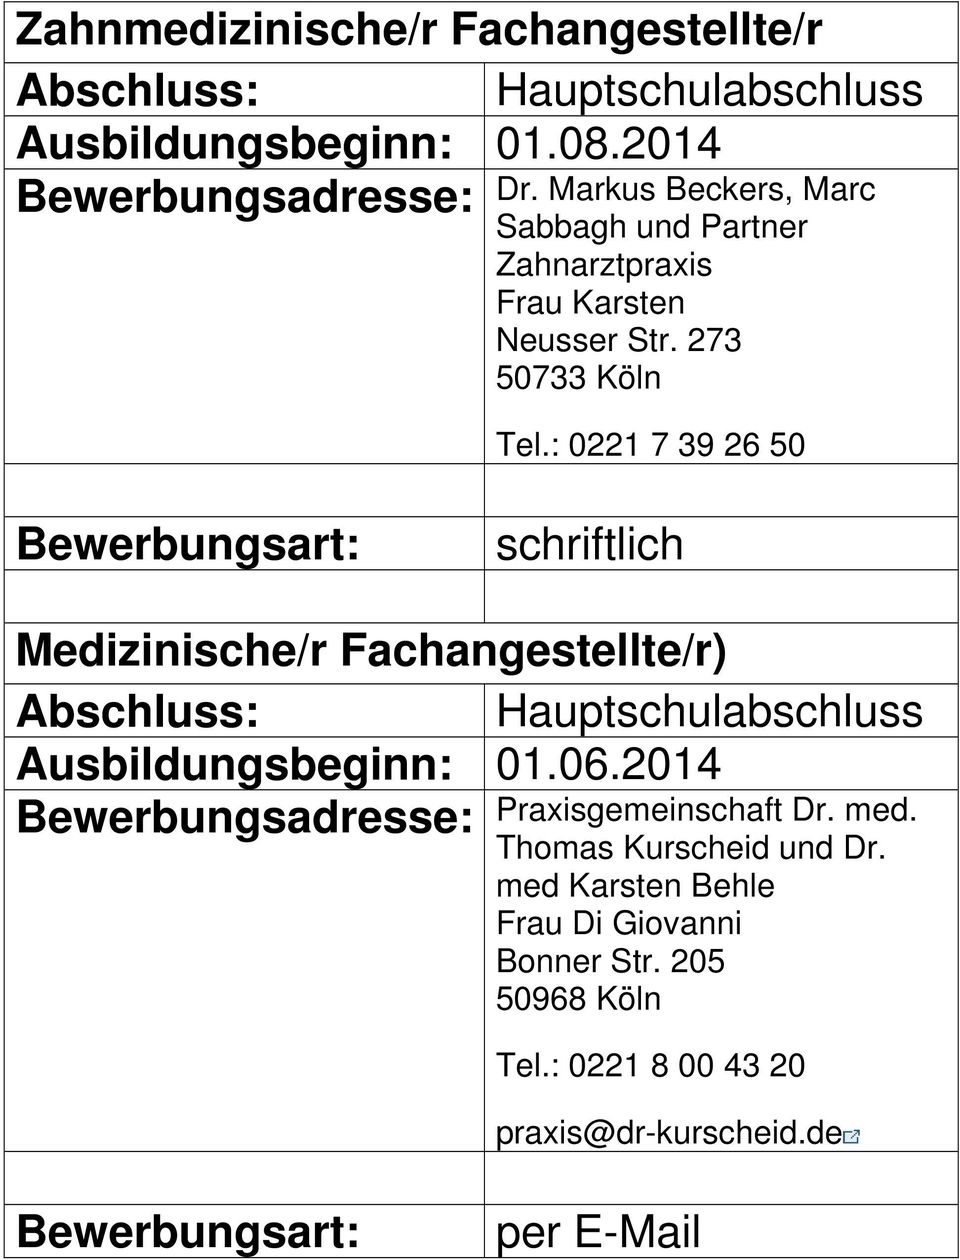 273 50733 Köln Tel.: 0221 7 39 26 50 Medizinische/r Fachangestellte/r) Ausbildungsbeginn: 01.06.